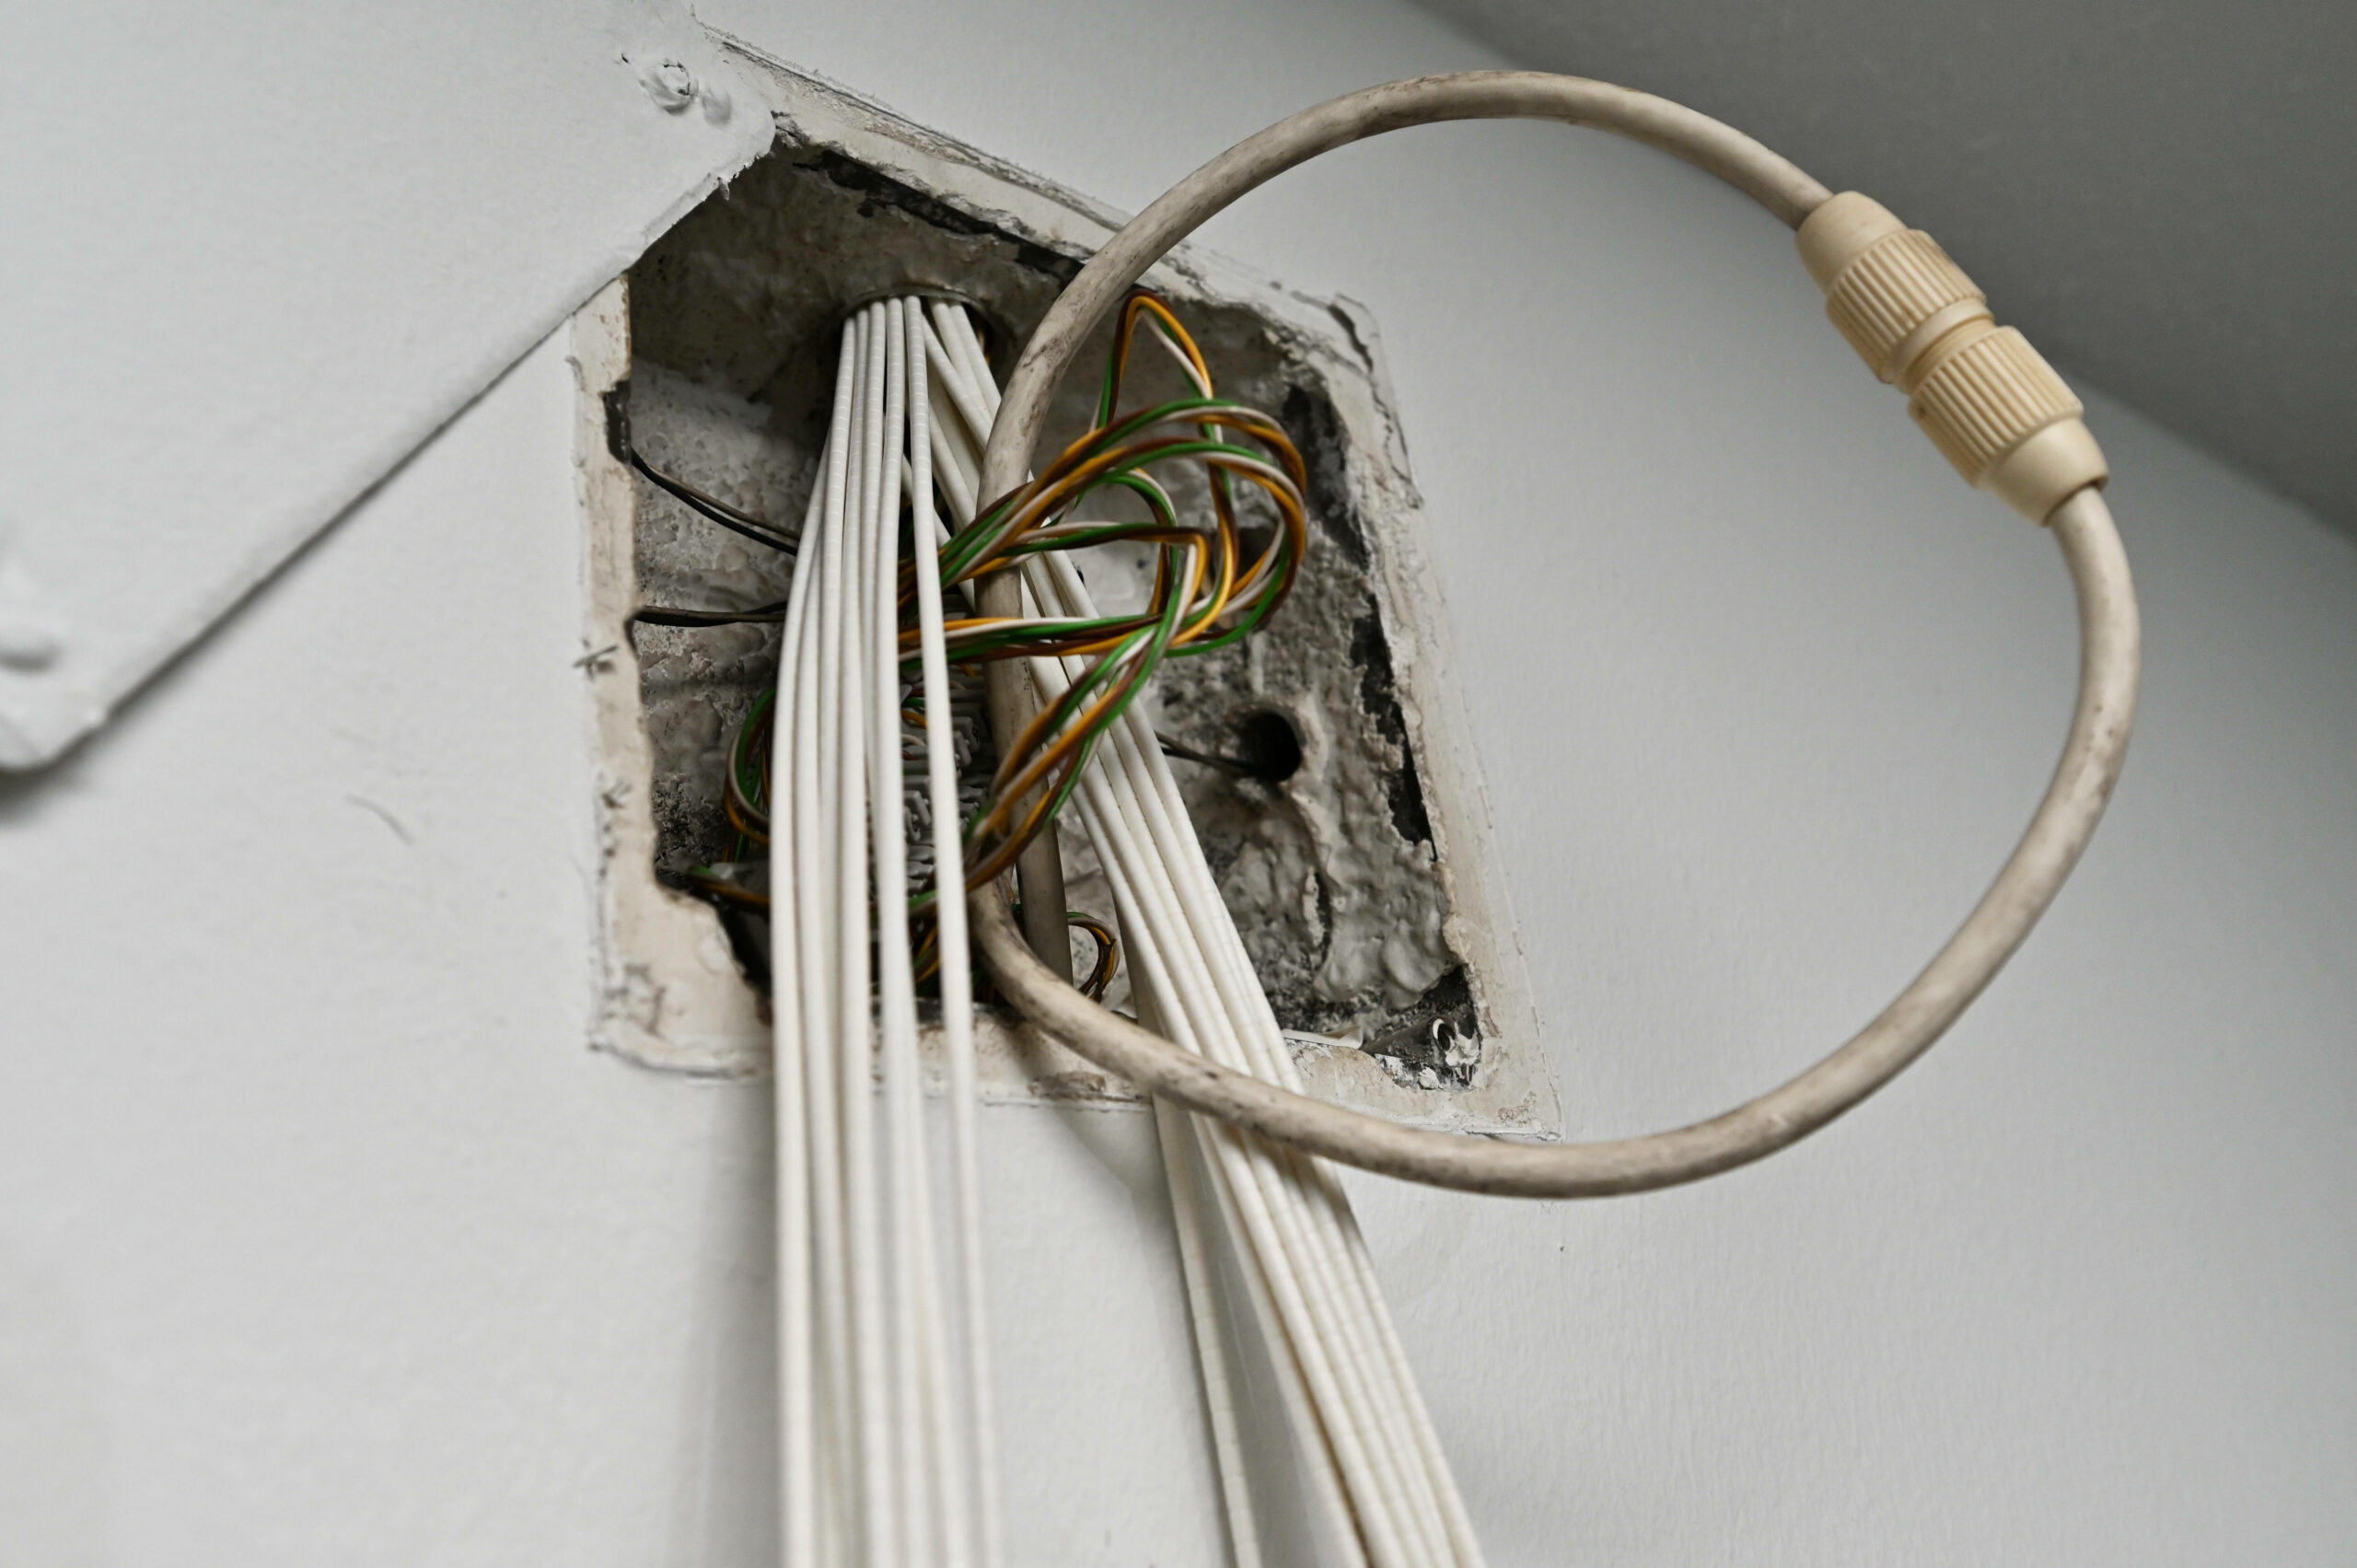 Der Techniker sollte in der Wohnung einen Internetanschluss auf Glasfaser umstellen, wobei es aber zu einem Konflikt kam. (Symbolbild)